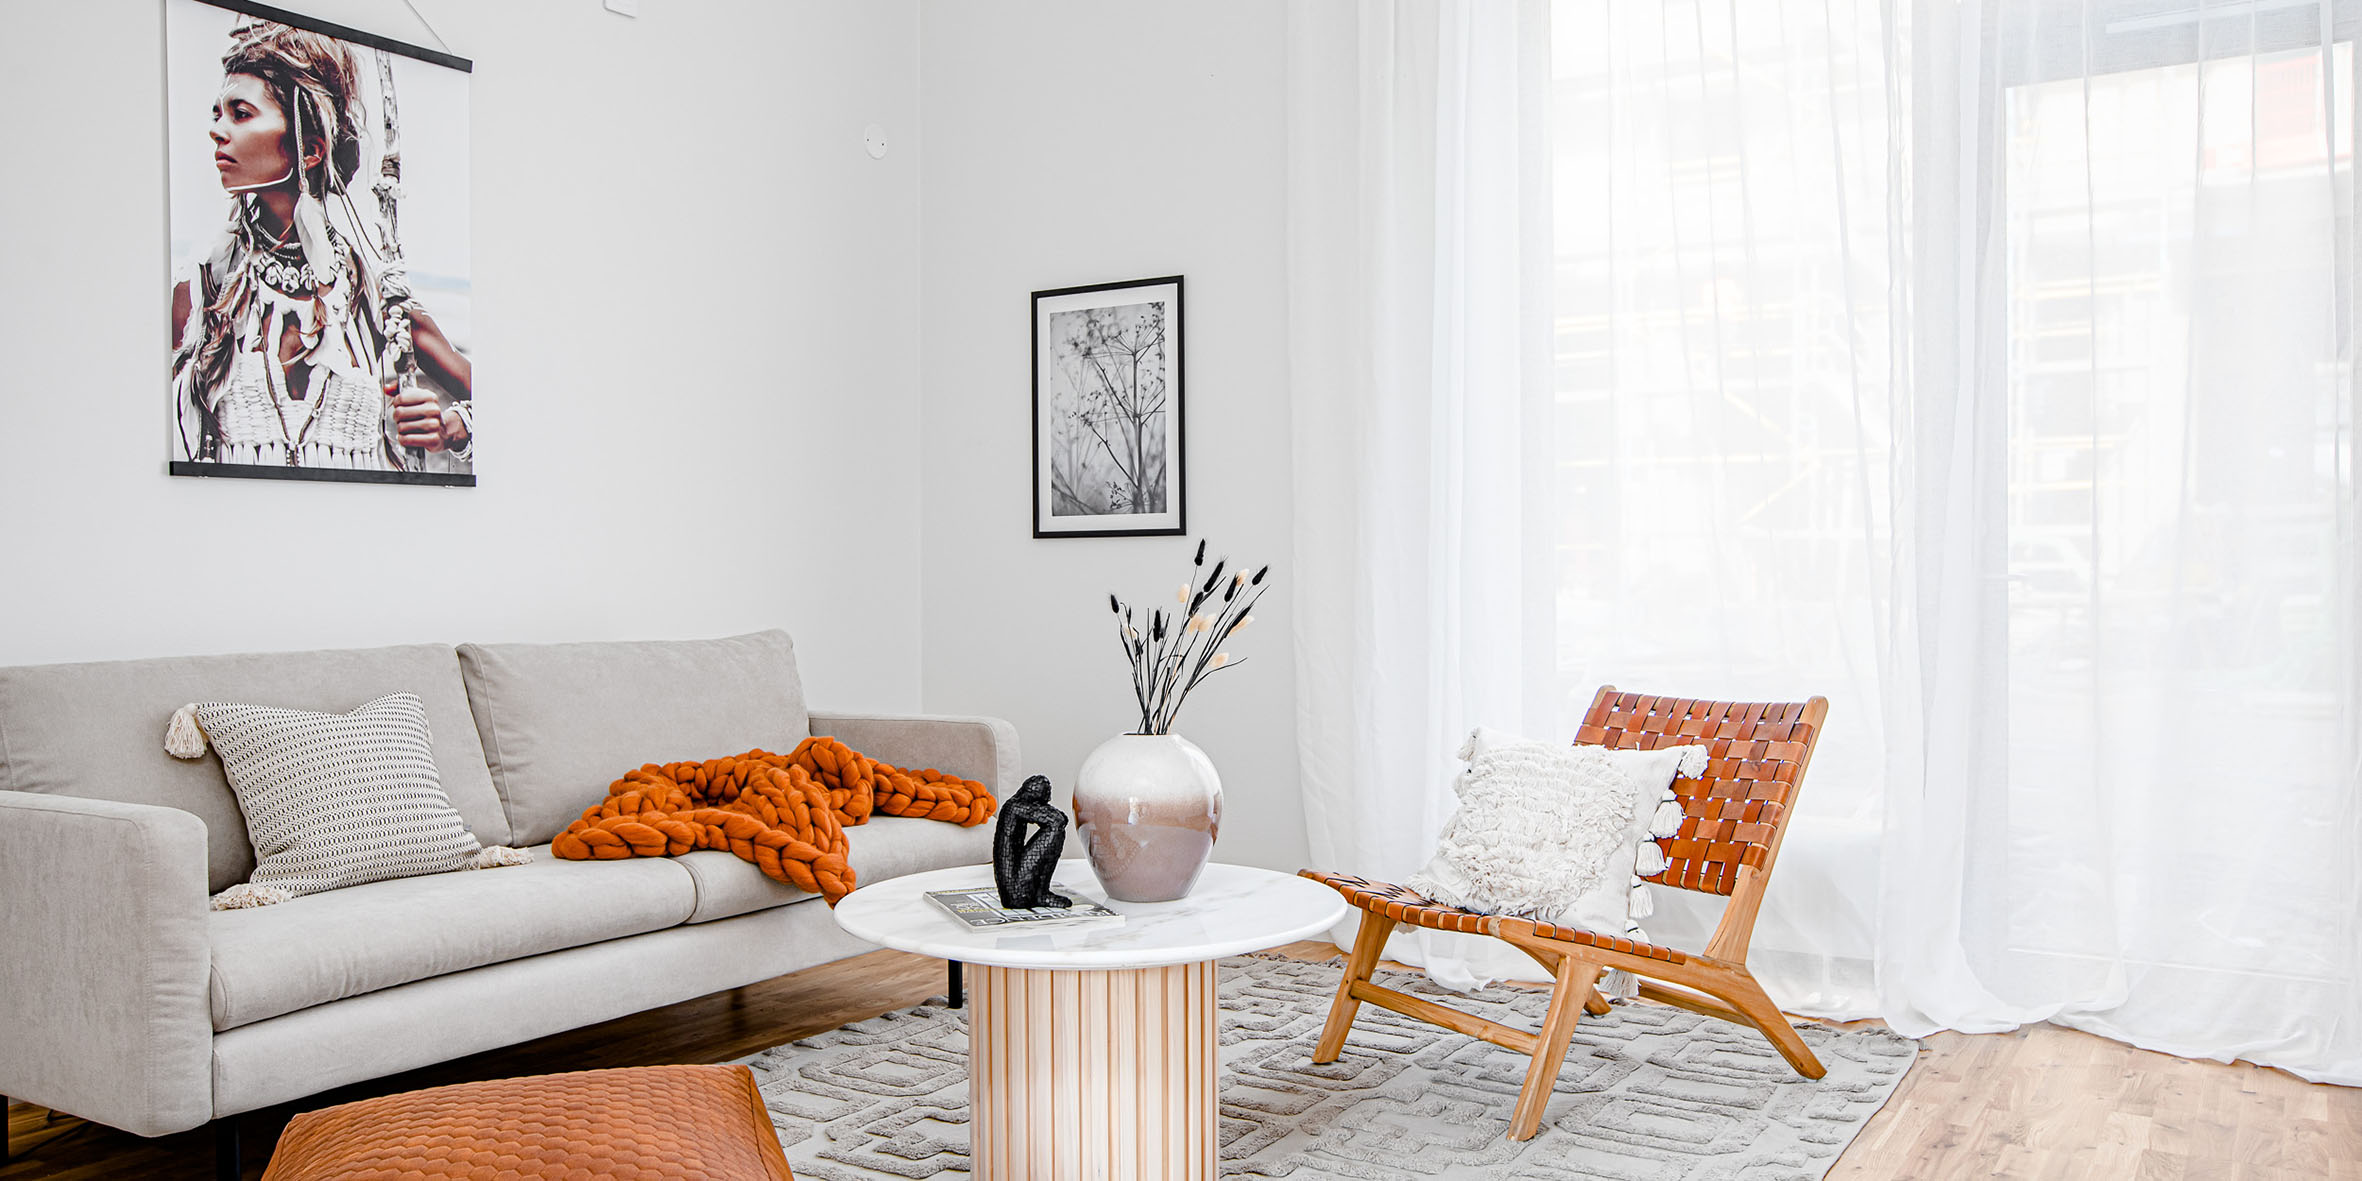 Ett ljust och vitt vardagsrum med en beige soffa och en skinnfåtölj. En orange filt och en stor tavla med ett motiv av en kvinna syns också.